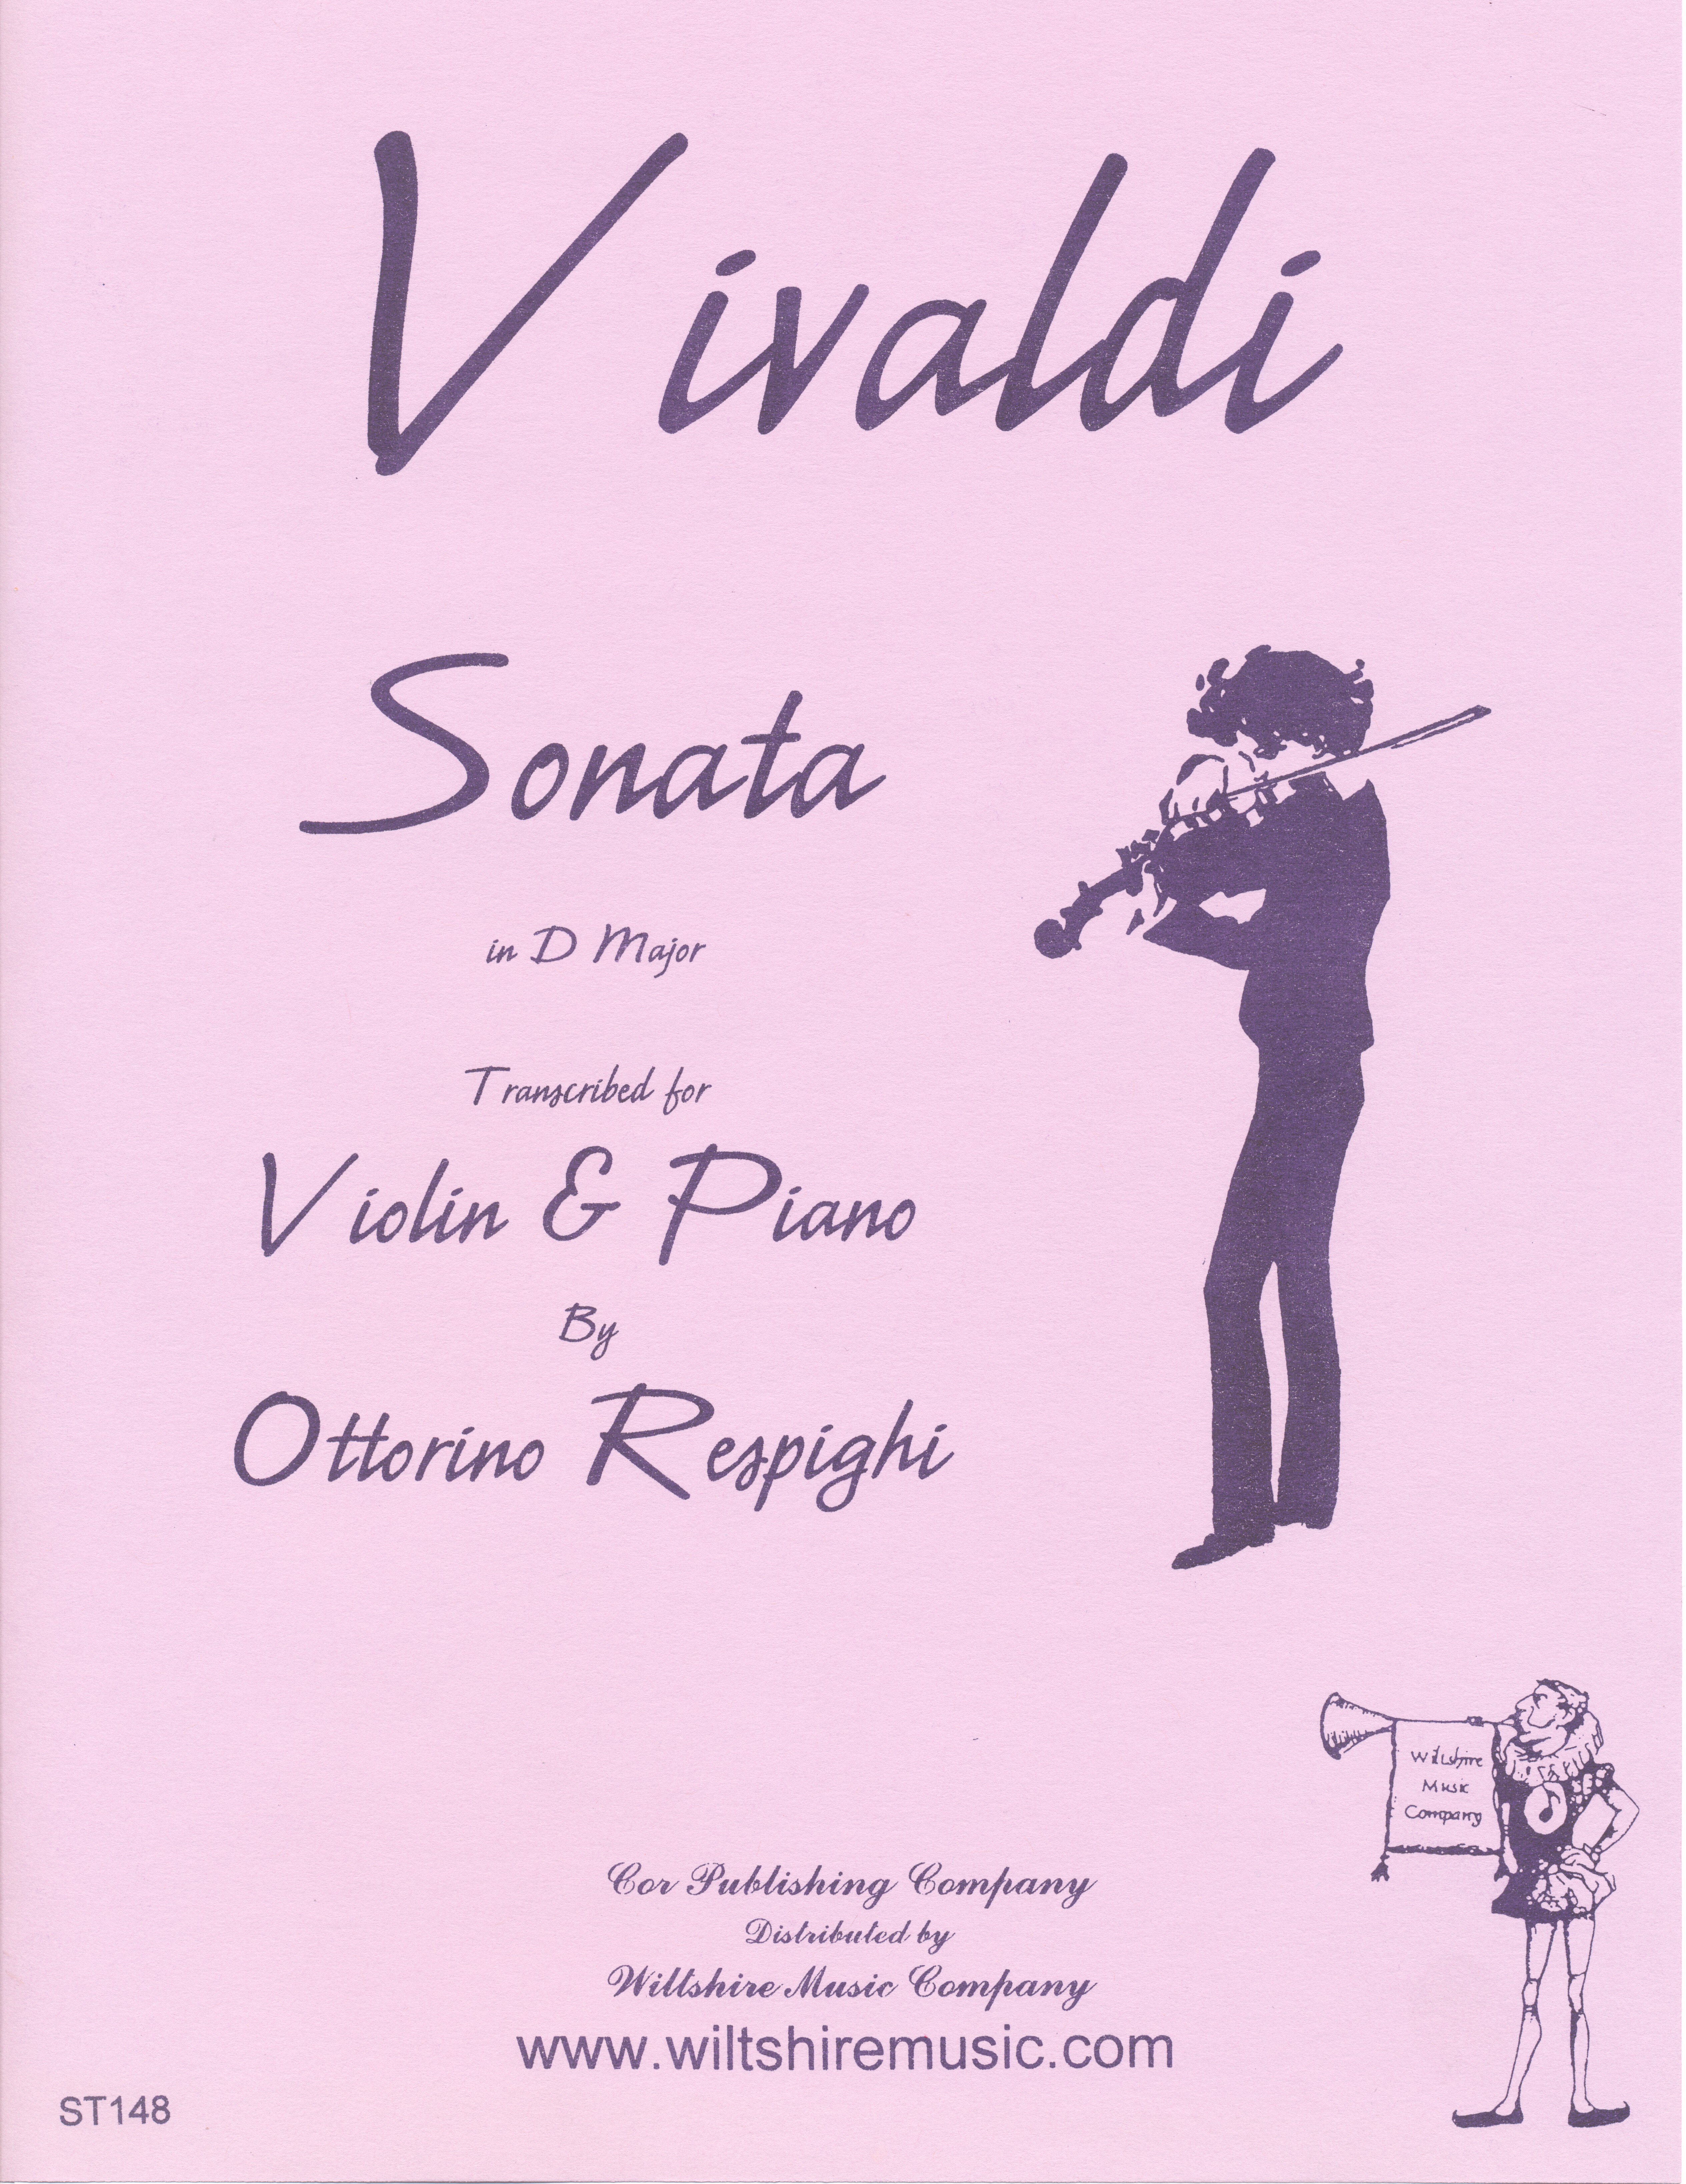 Sonata in D Major - VIVALDI